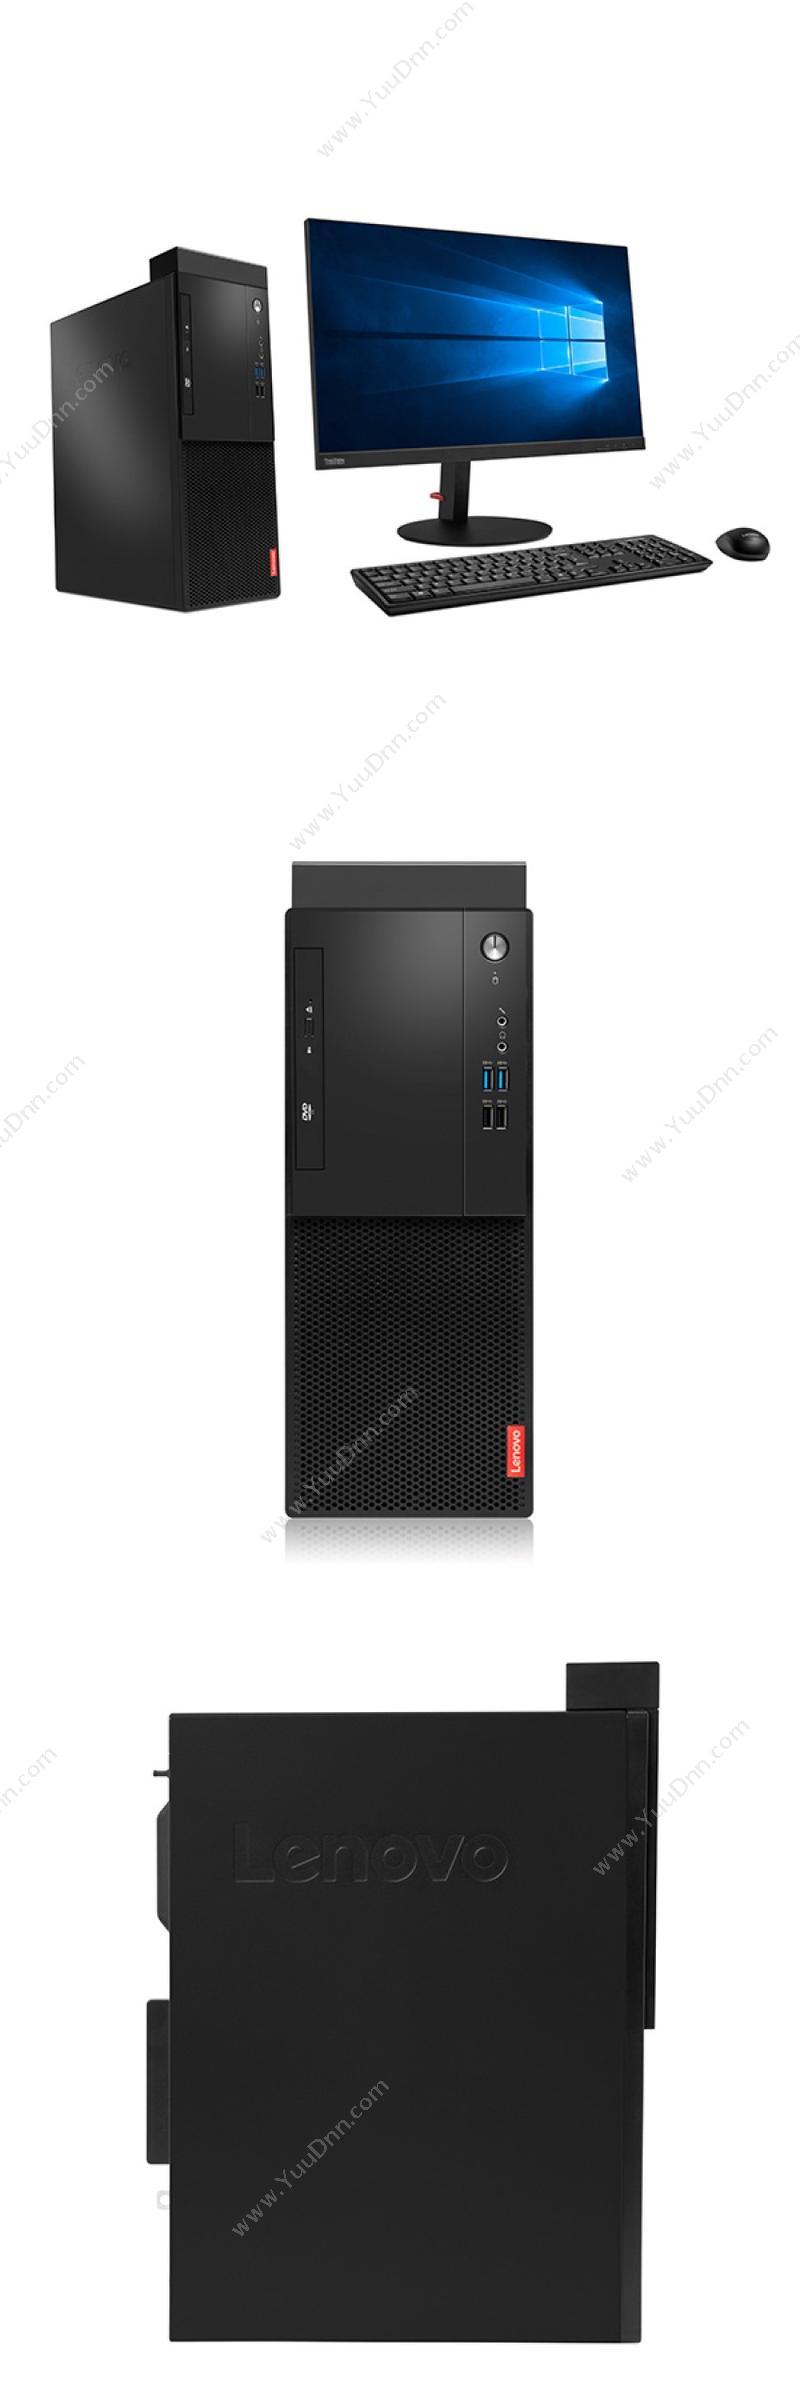 联想 Lenovo 启天M520-D469（19.5显示器） 台式机 台式电脑套机